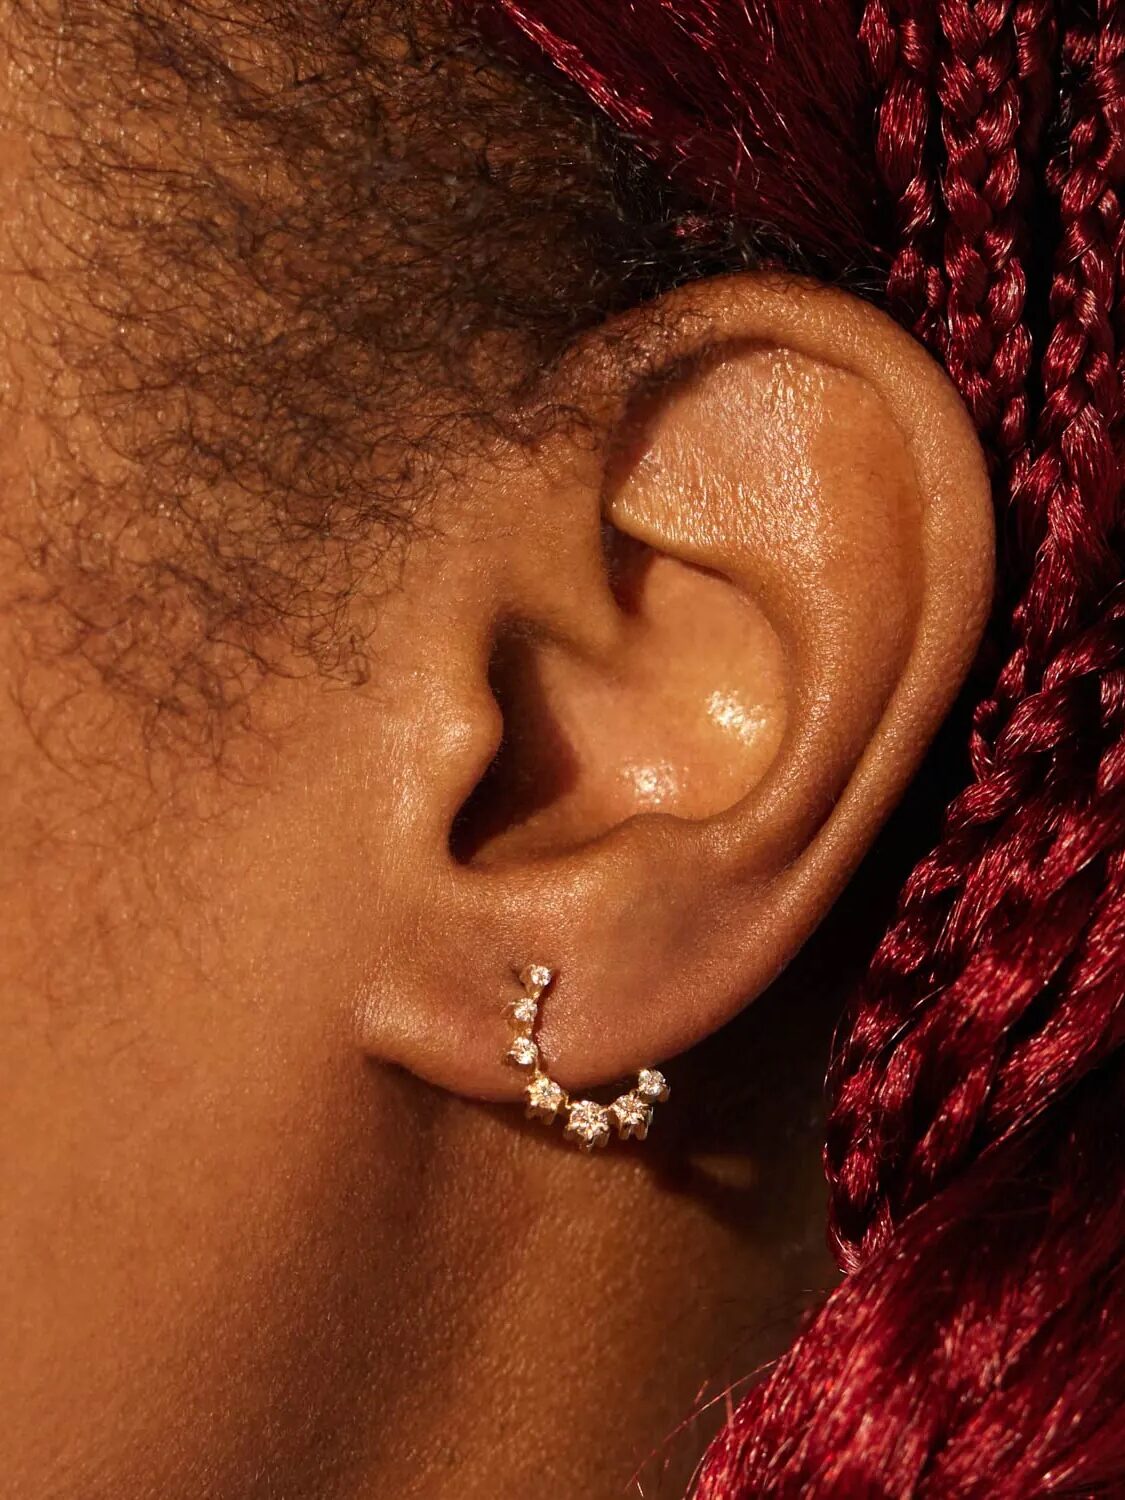 A diamond earring in an ear.